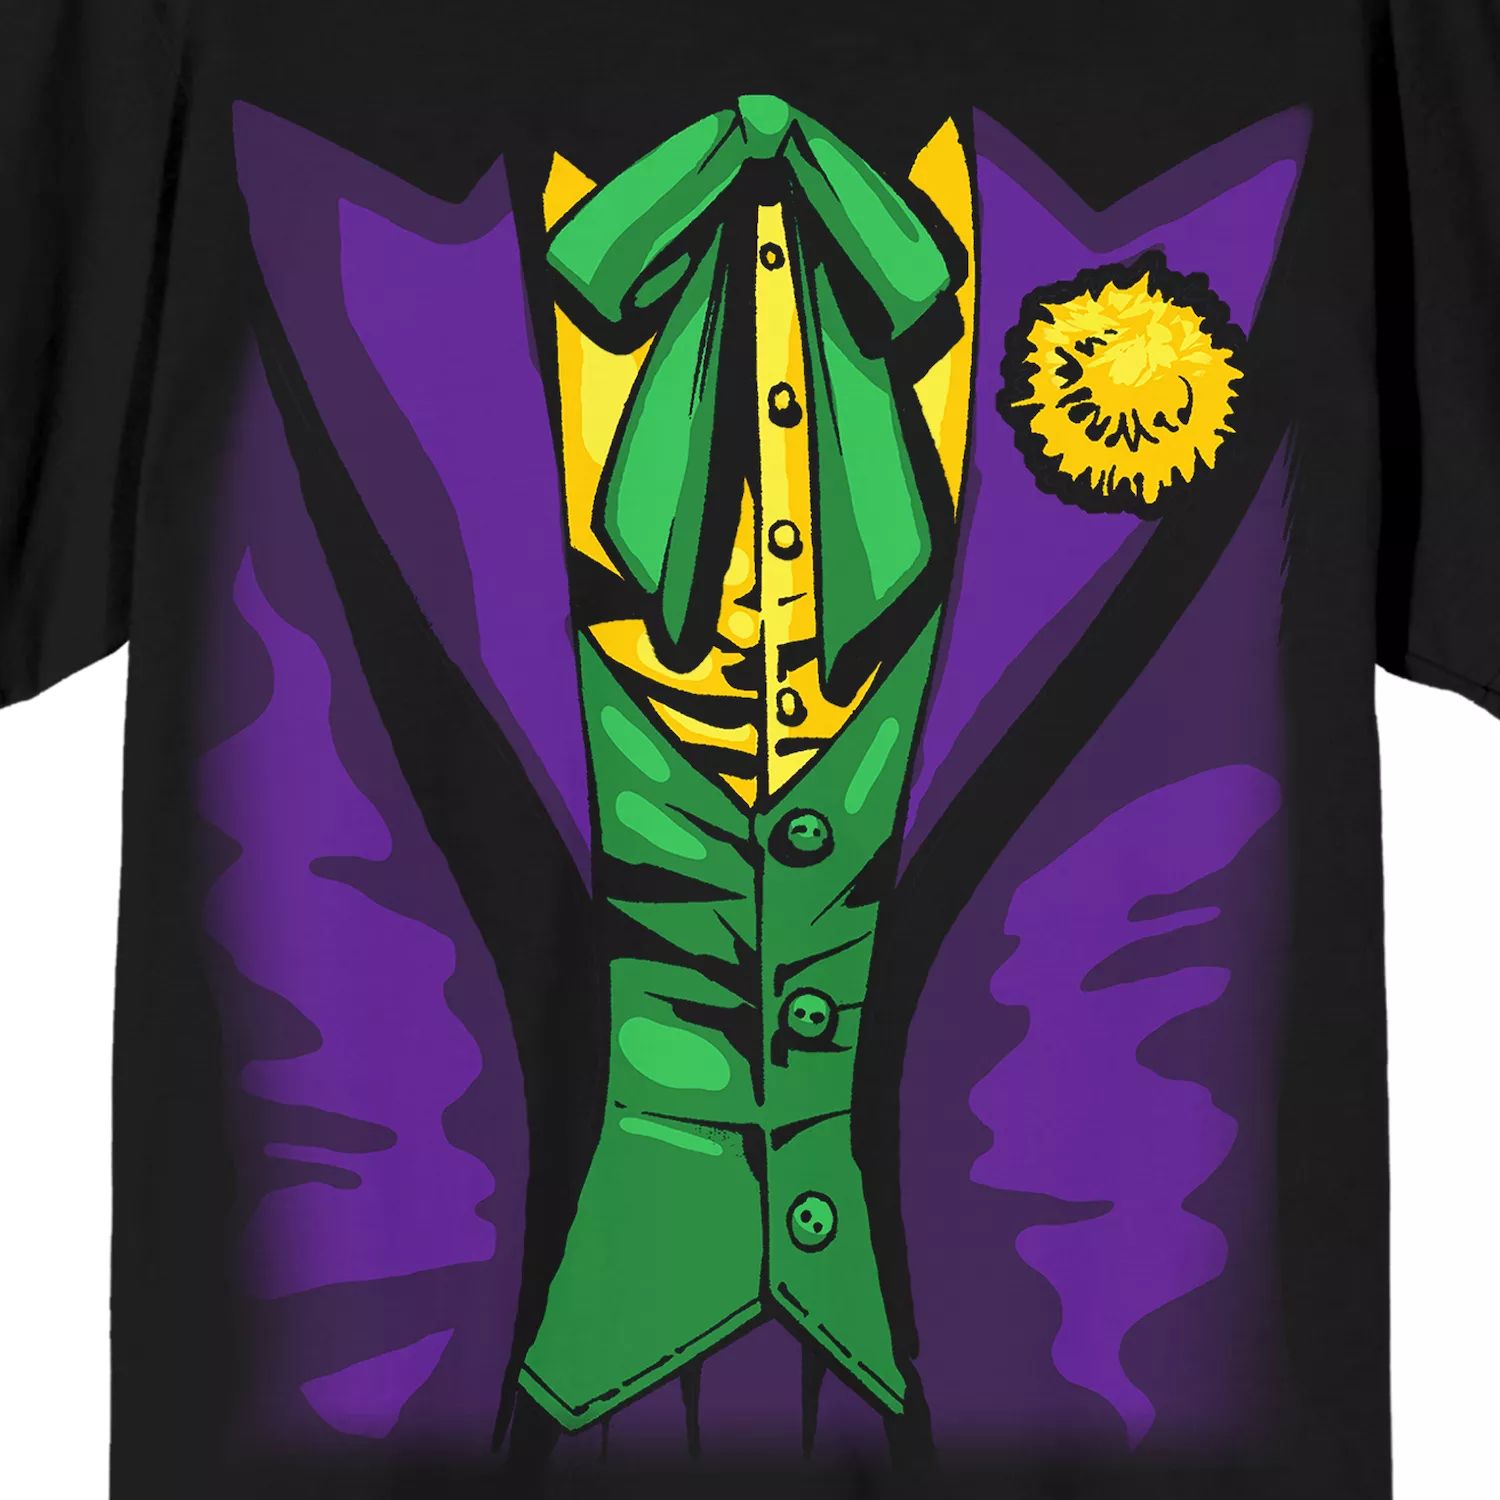 Мужская футболка DC Comics The Joker Licensed Character фото